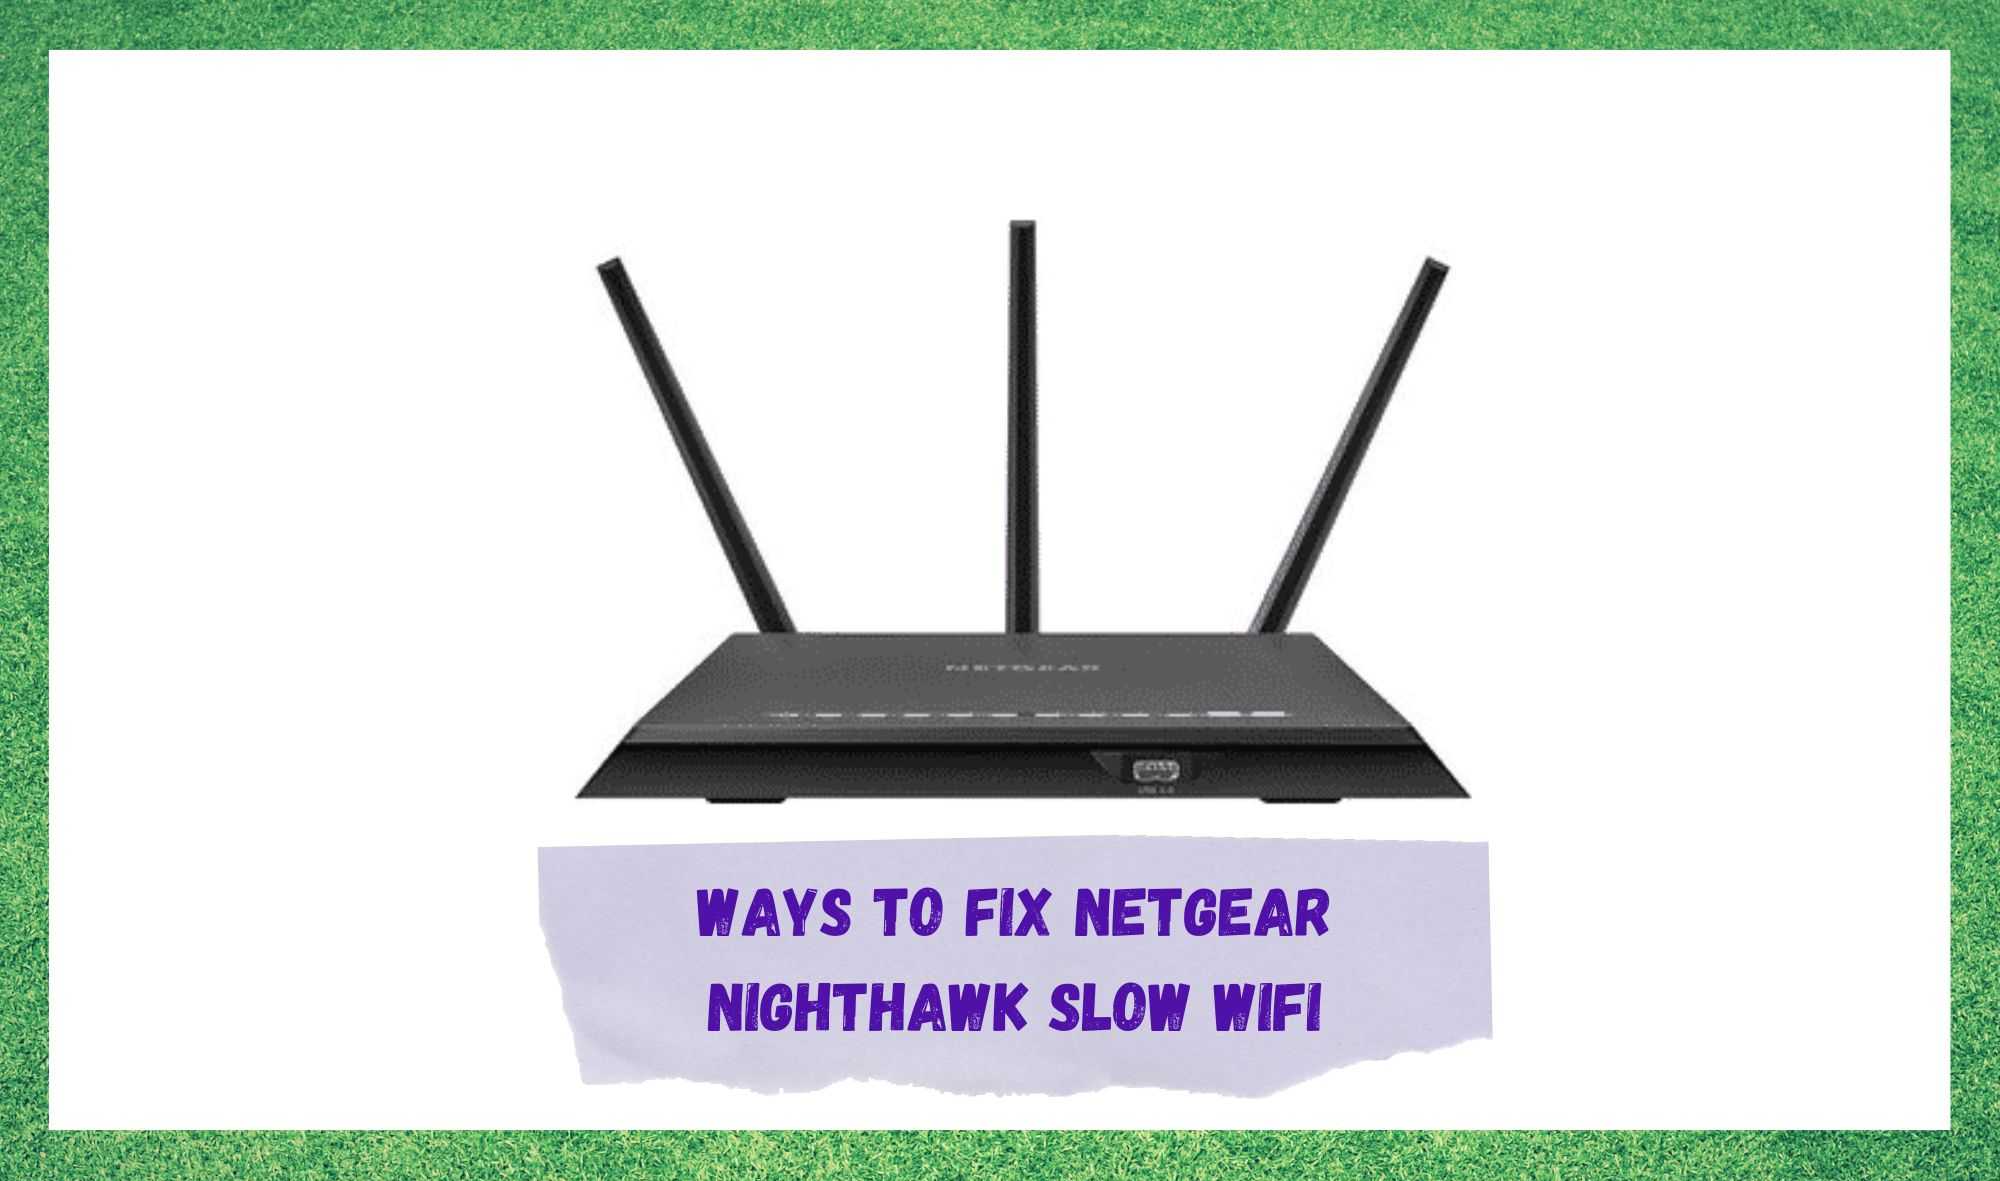 netgear nighthawk slow wifi